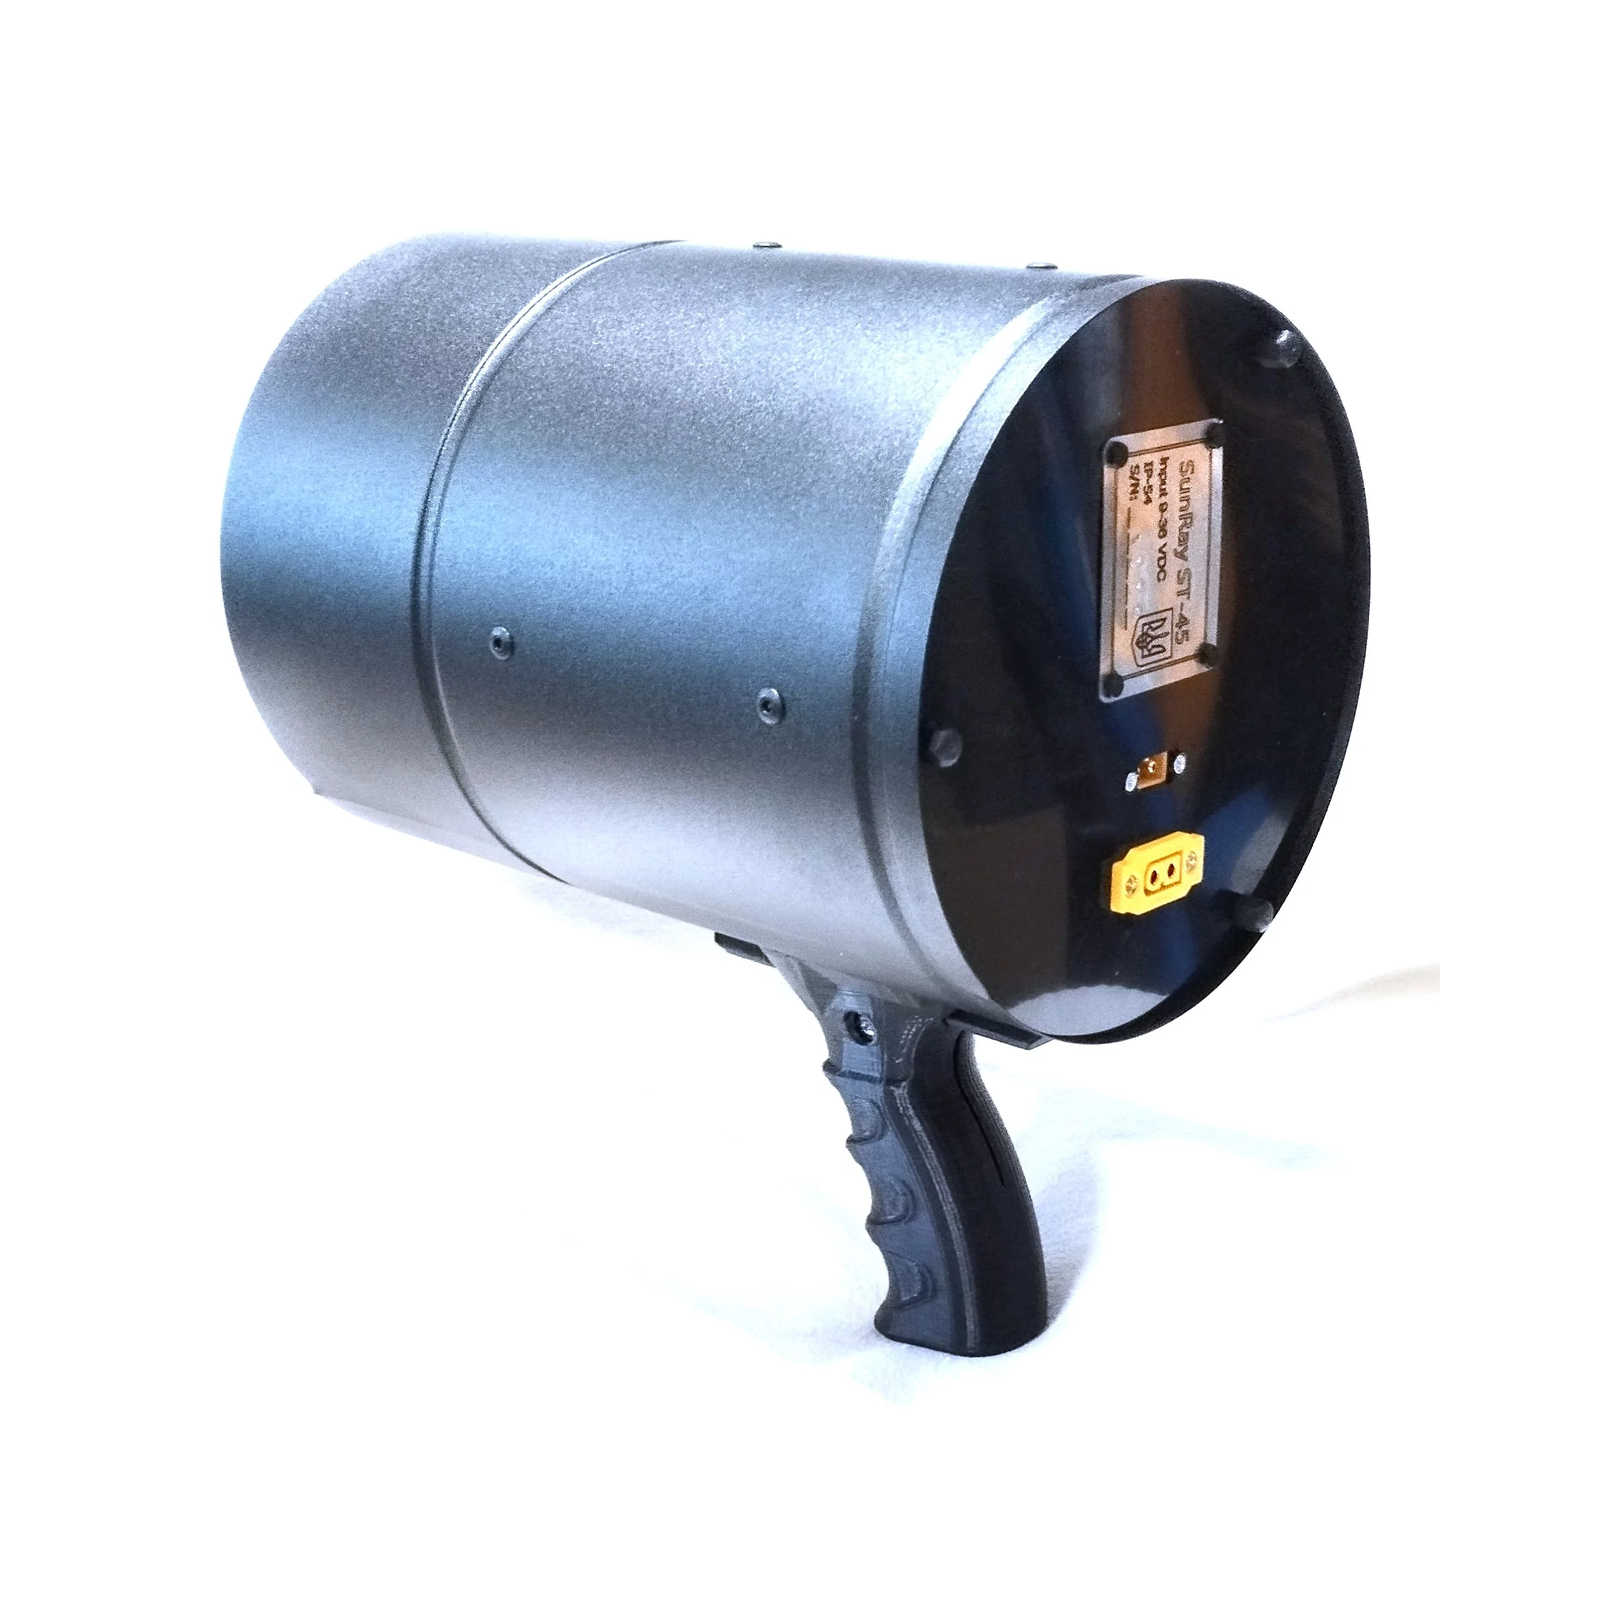 Зенітний прожектор Ловець Шахедів спеціальний пошуковий ручний (ЗПР-45) зображення 3